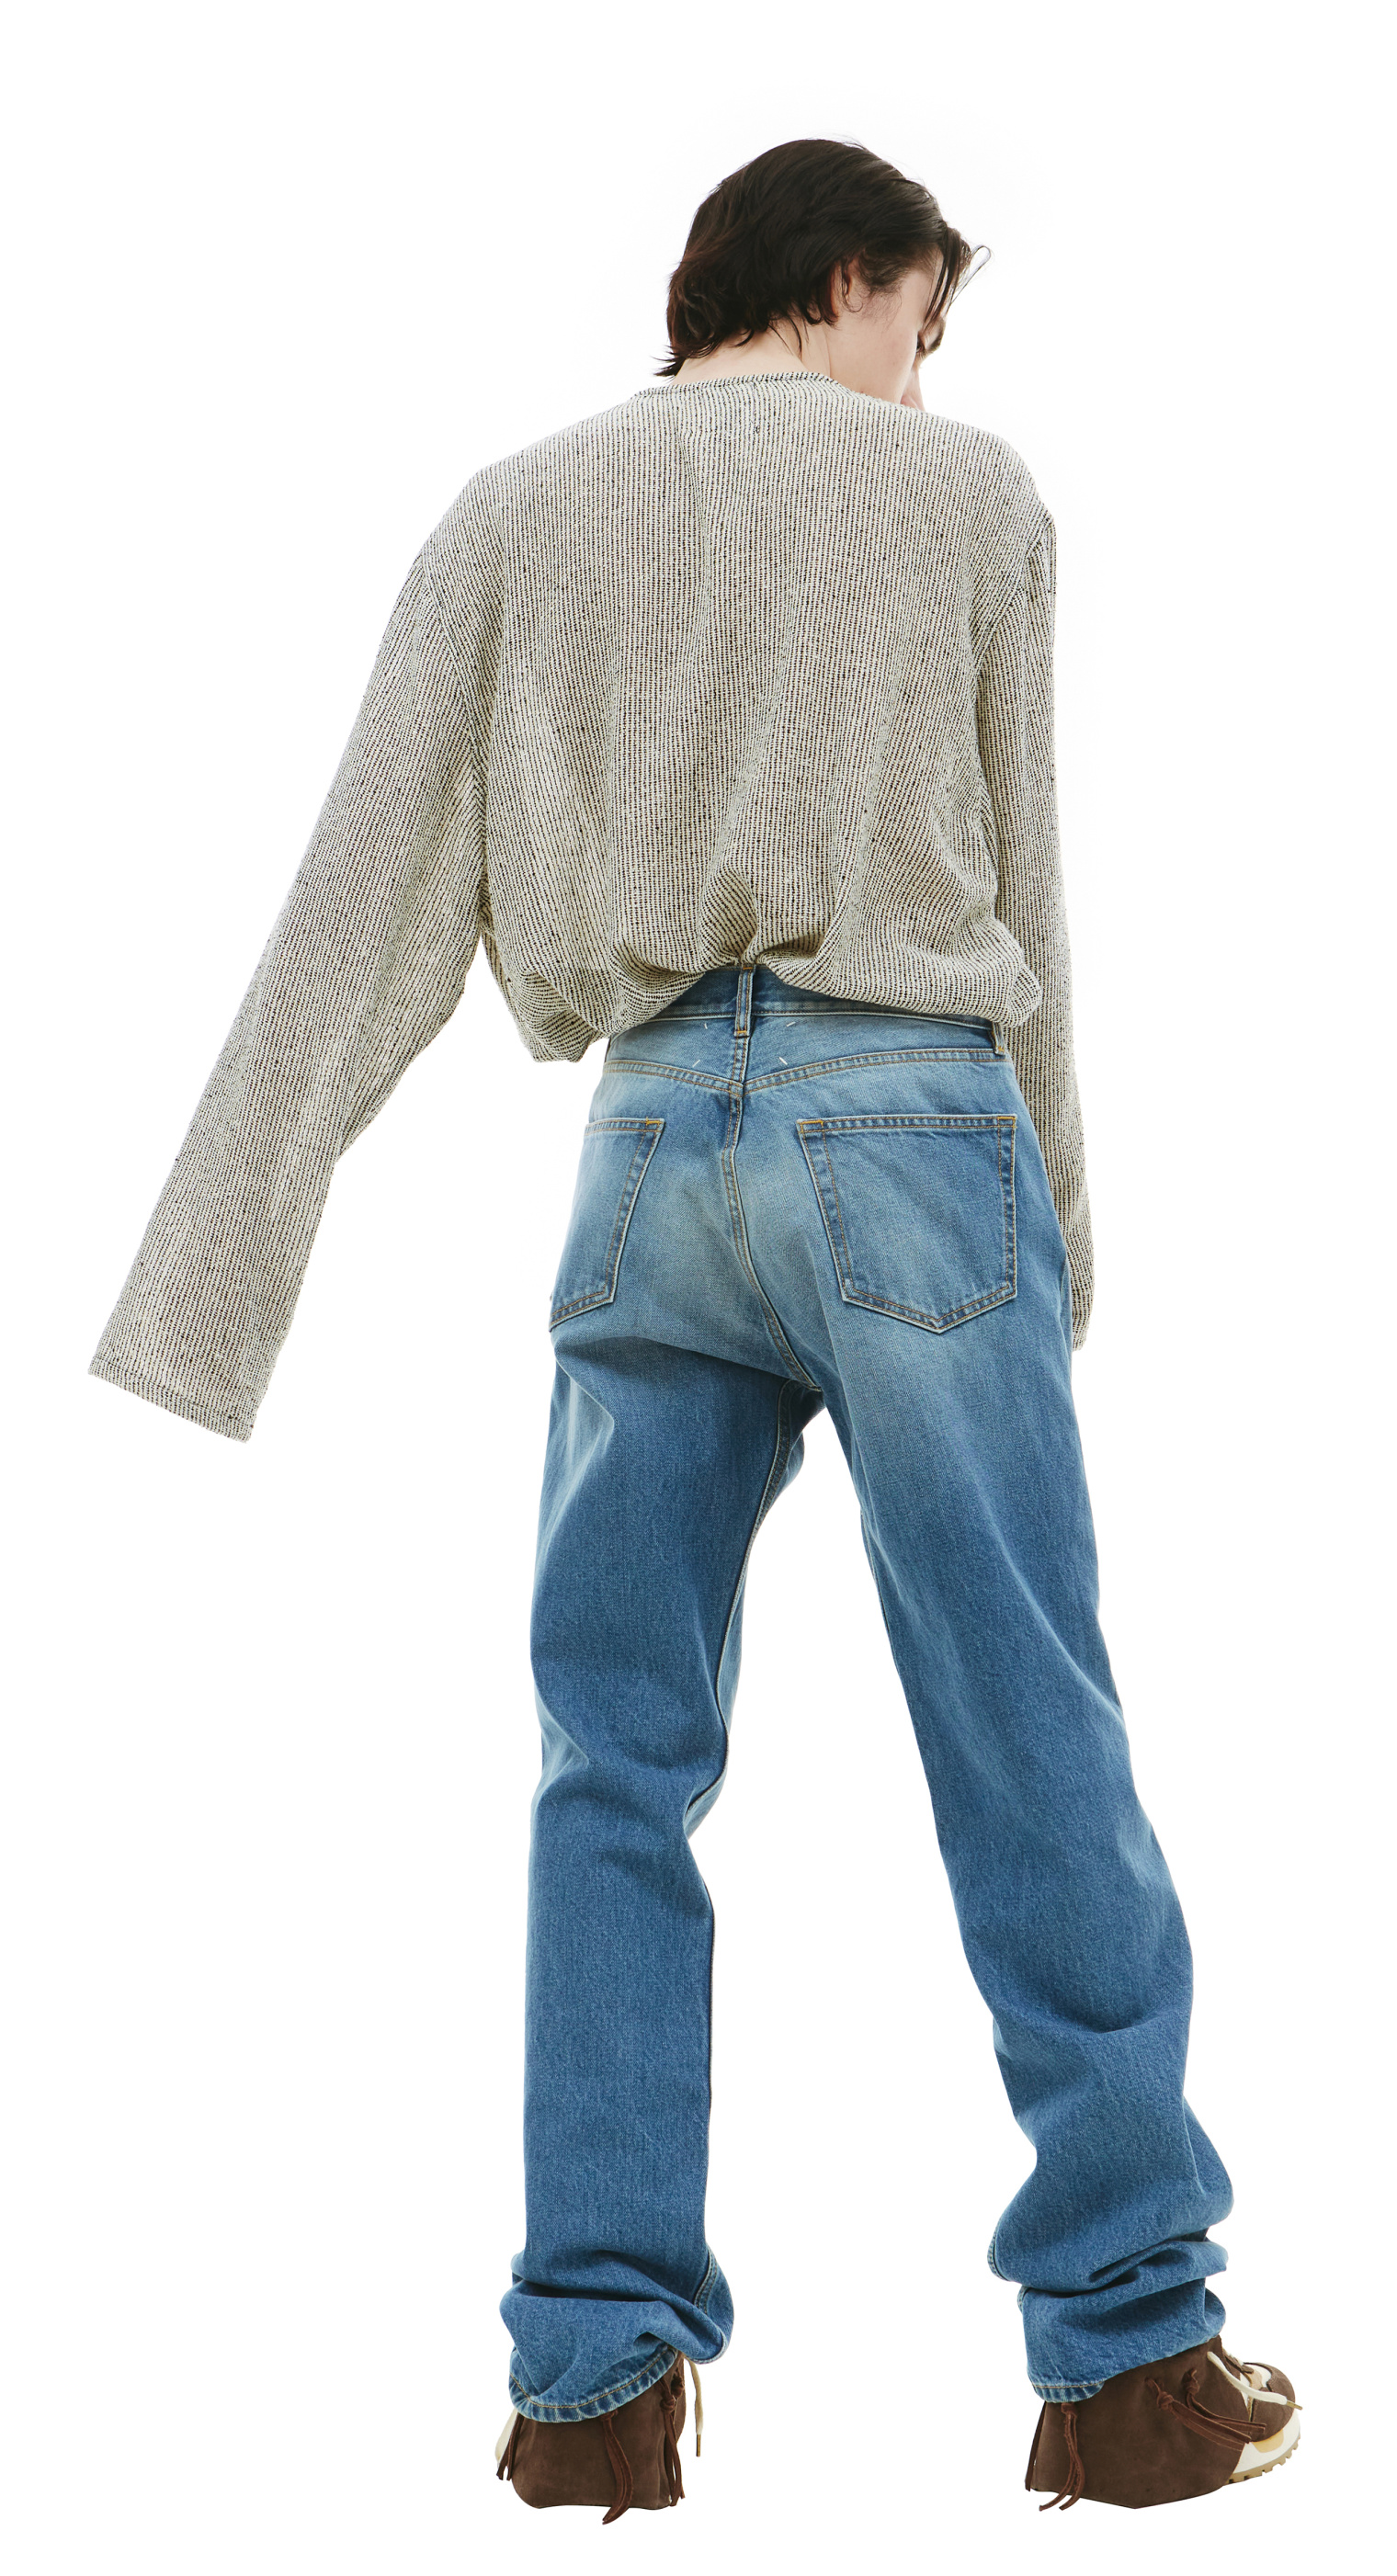 Buy Maison Margiela men blue straight leg jeans for $600 online on 